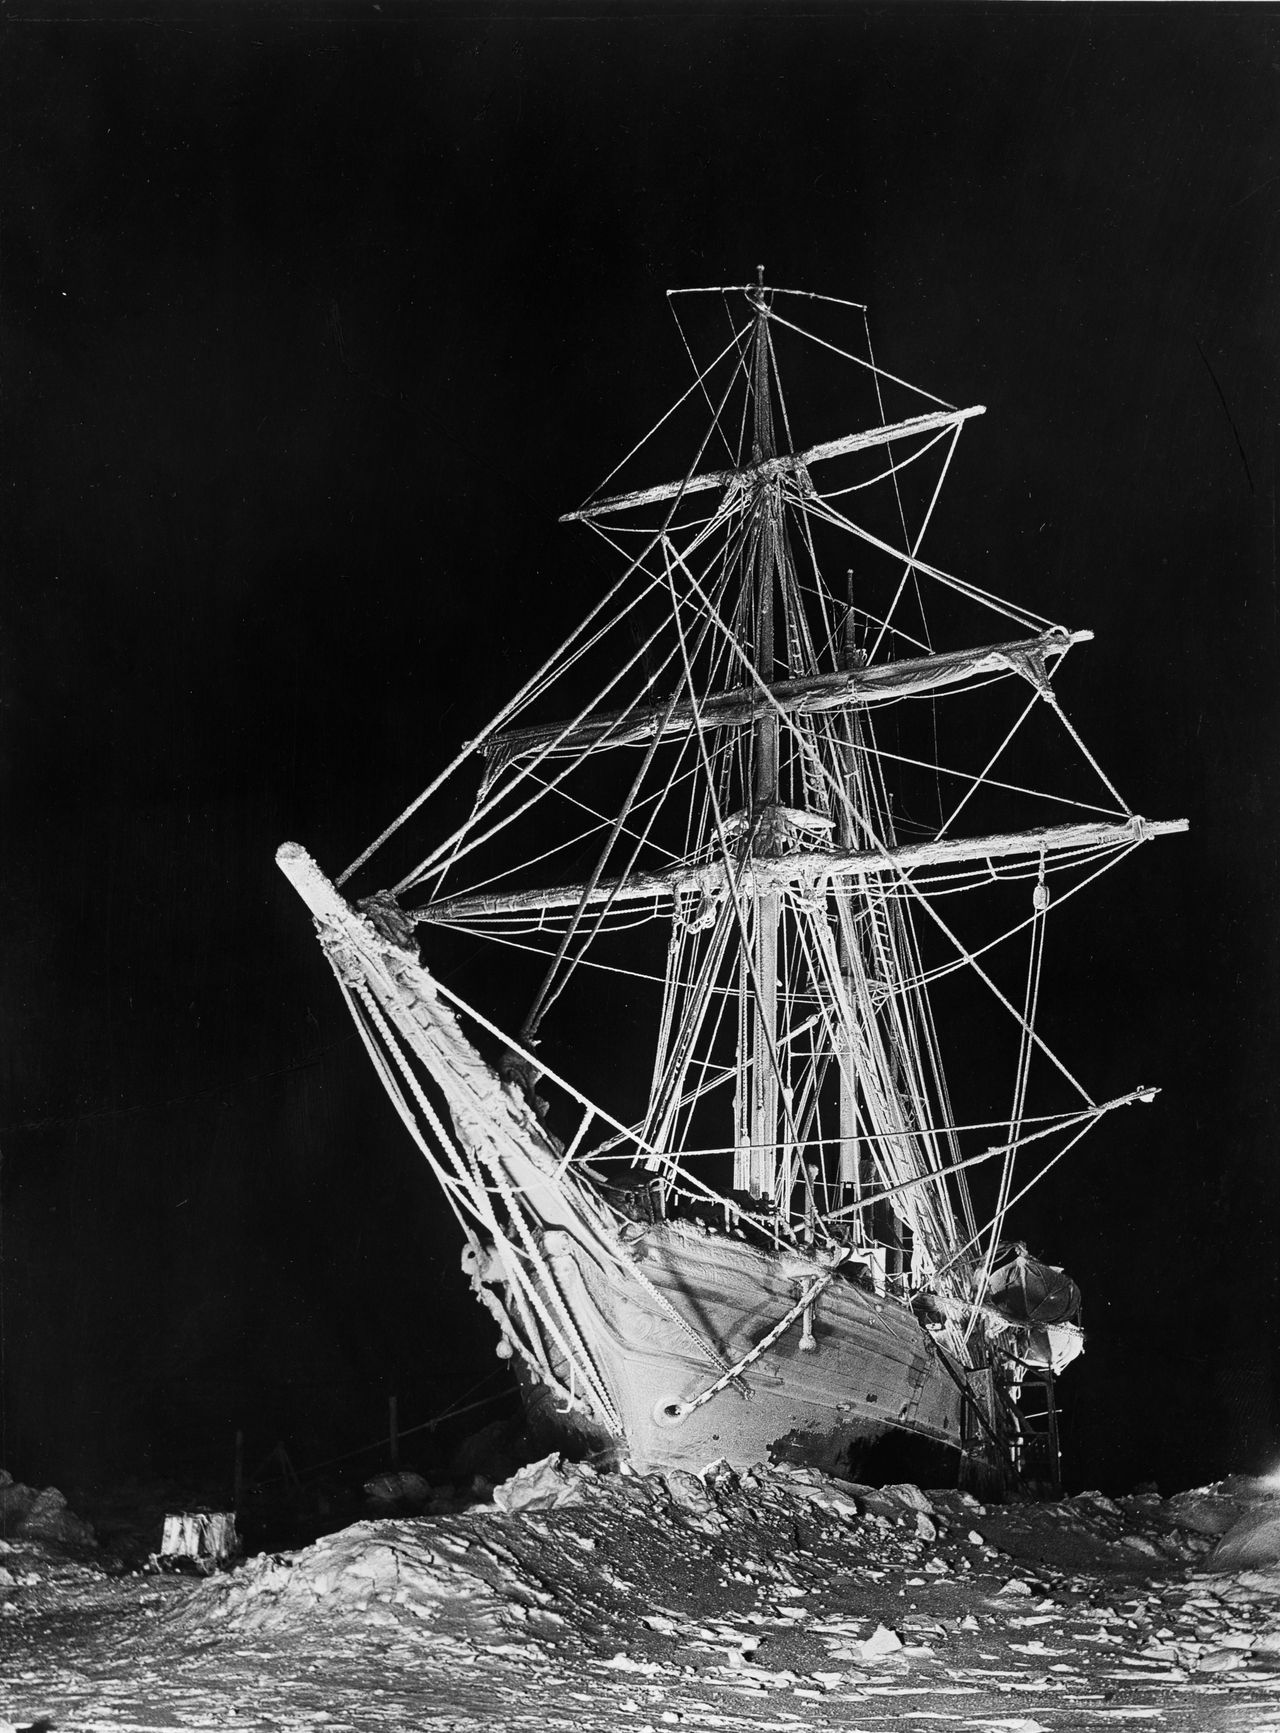 Esta imagem foi tirada por Hurley durante o inverno de 1915, usando 20 lanternas para criar um efeito de 'navio espectro', Antártica, 1915.